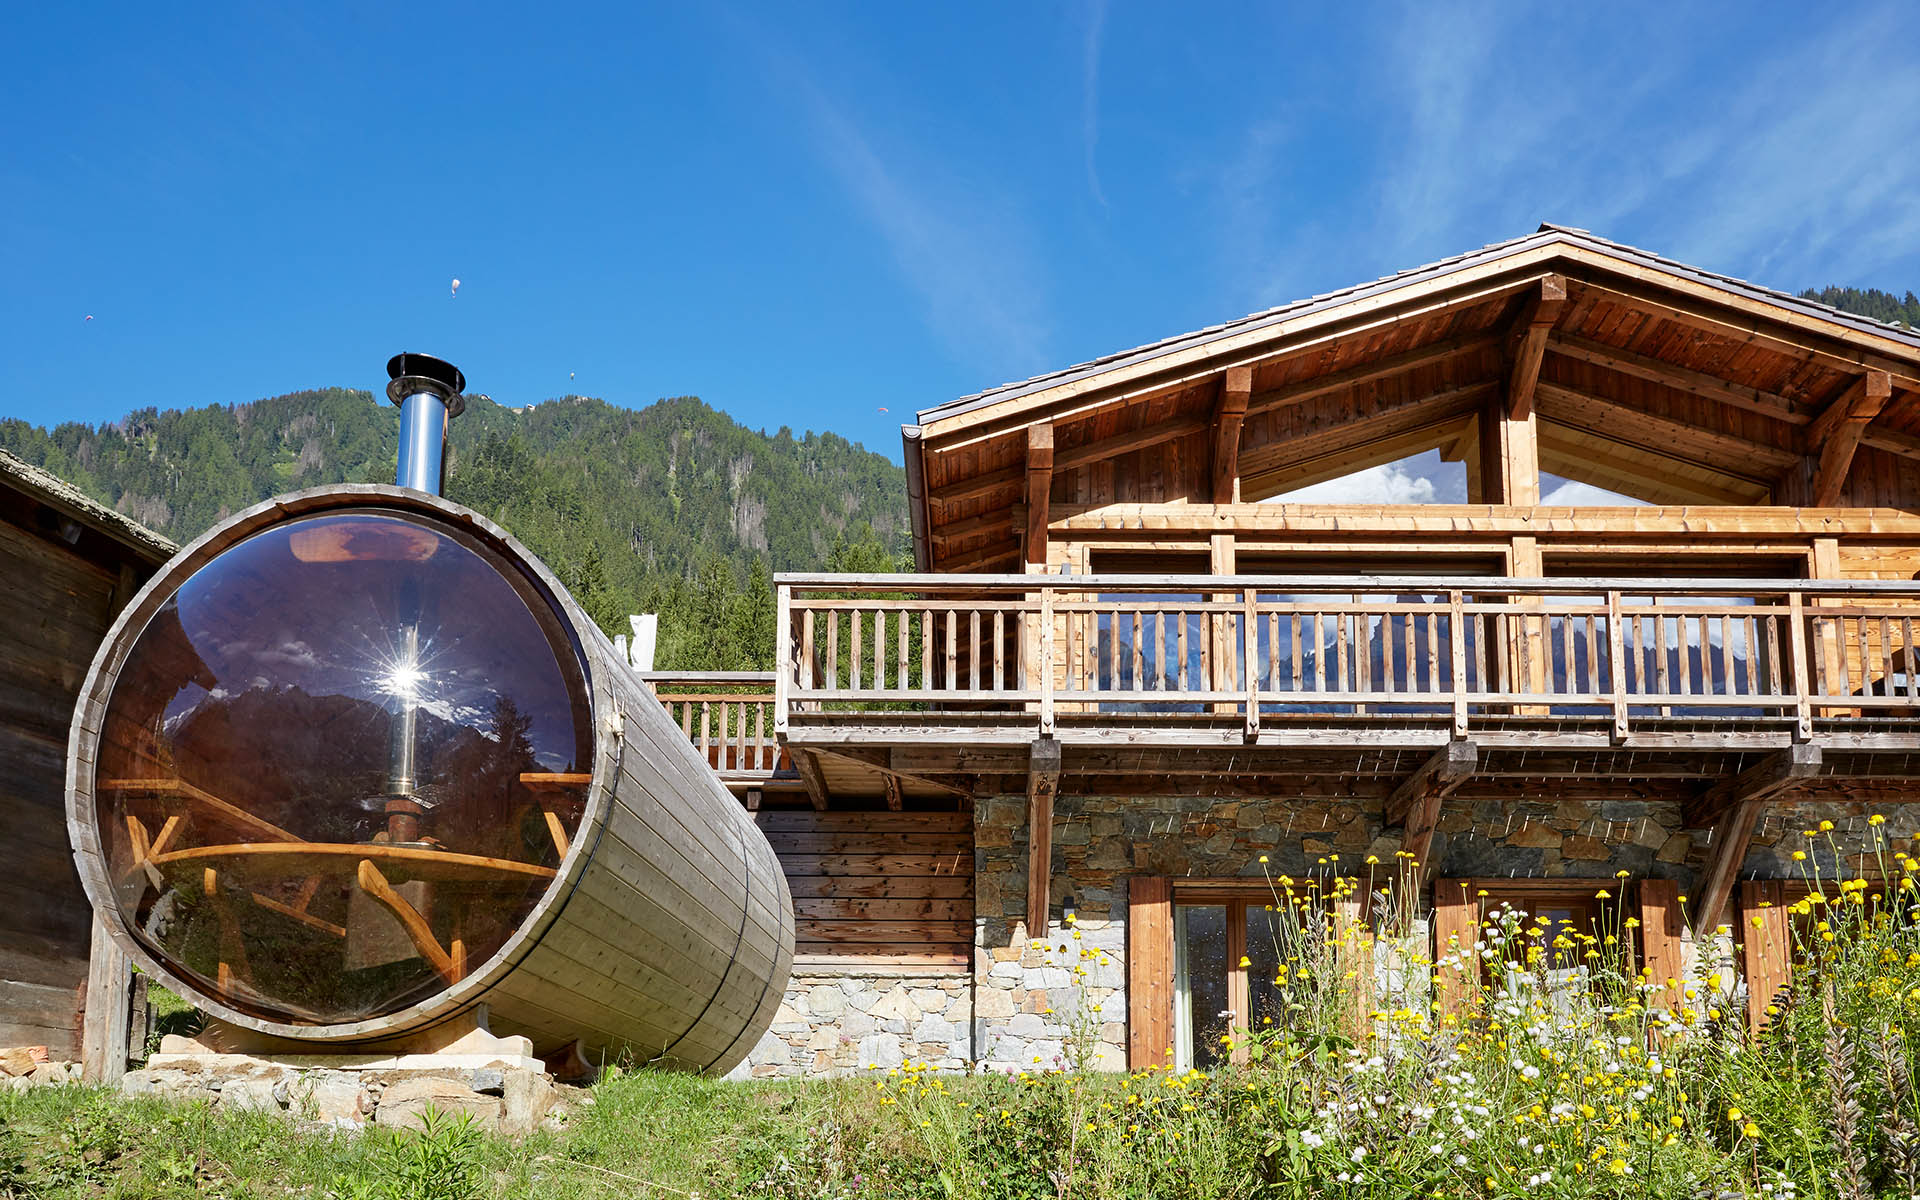 The Eco Lodge, Chamonix